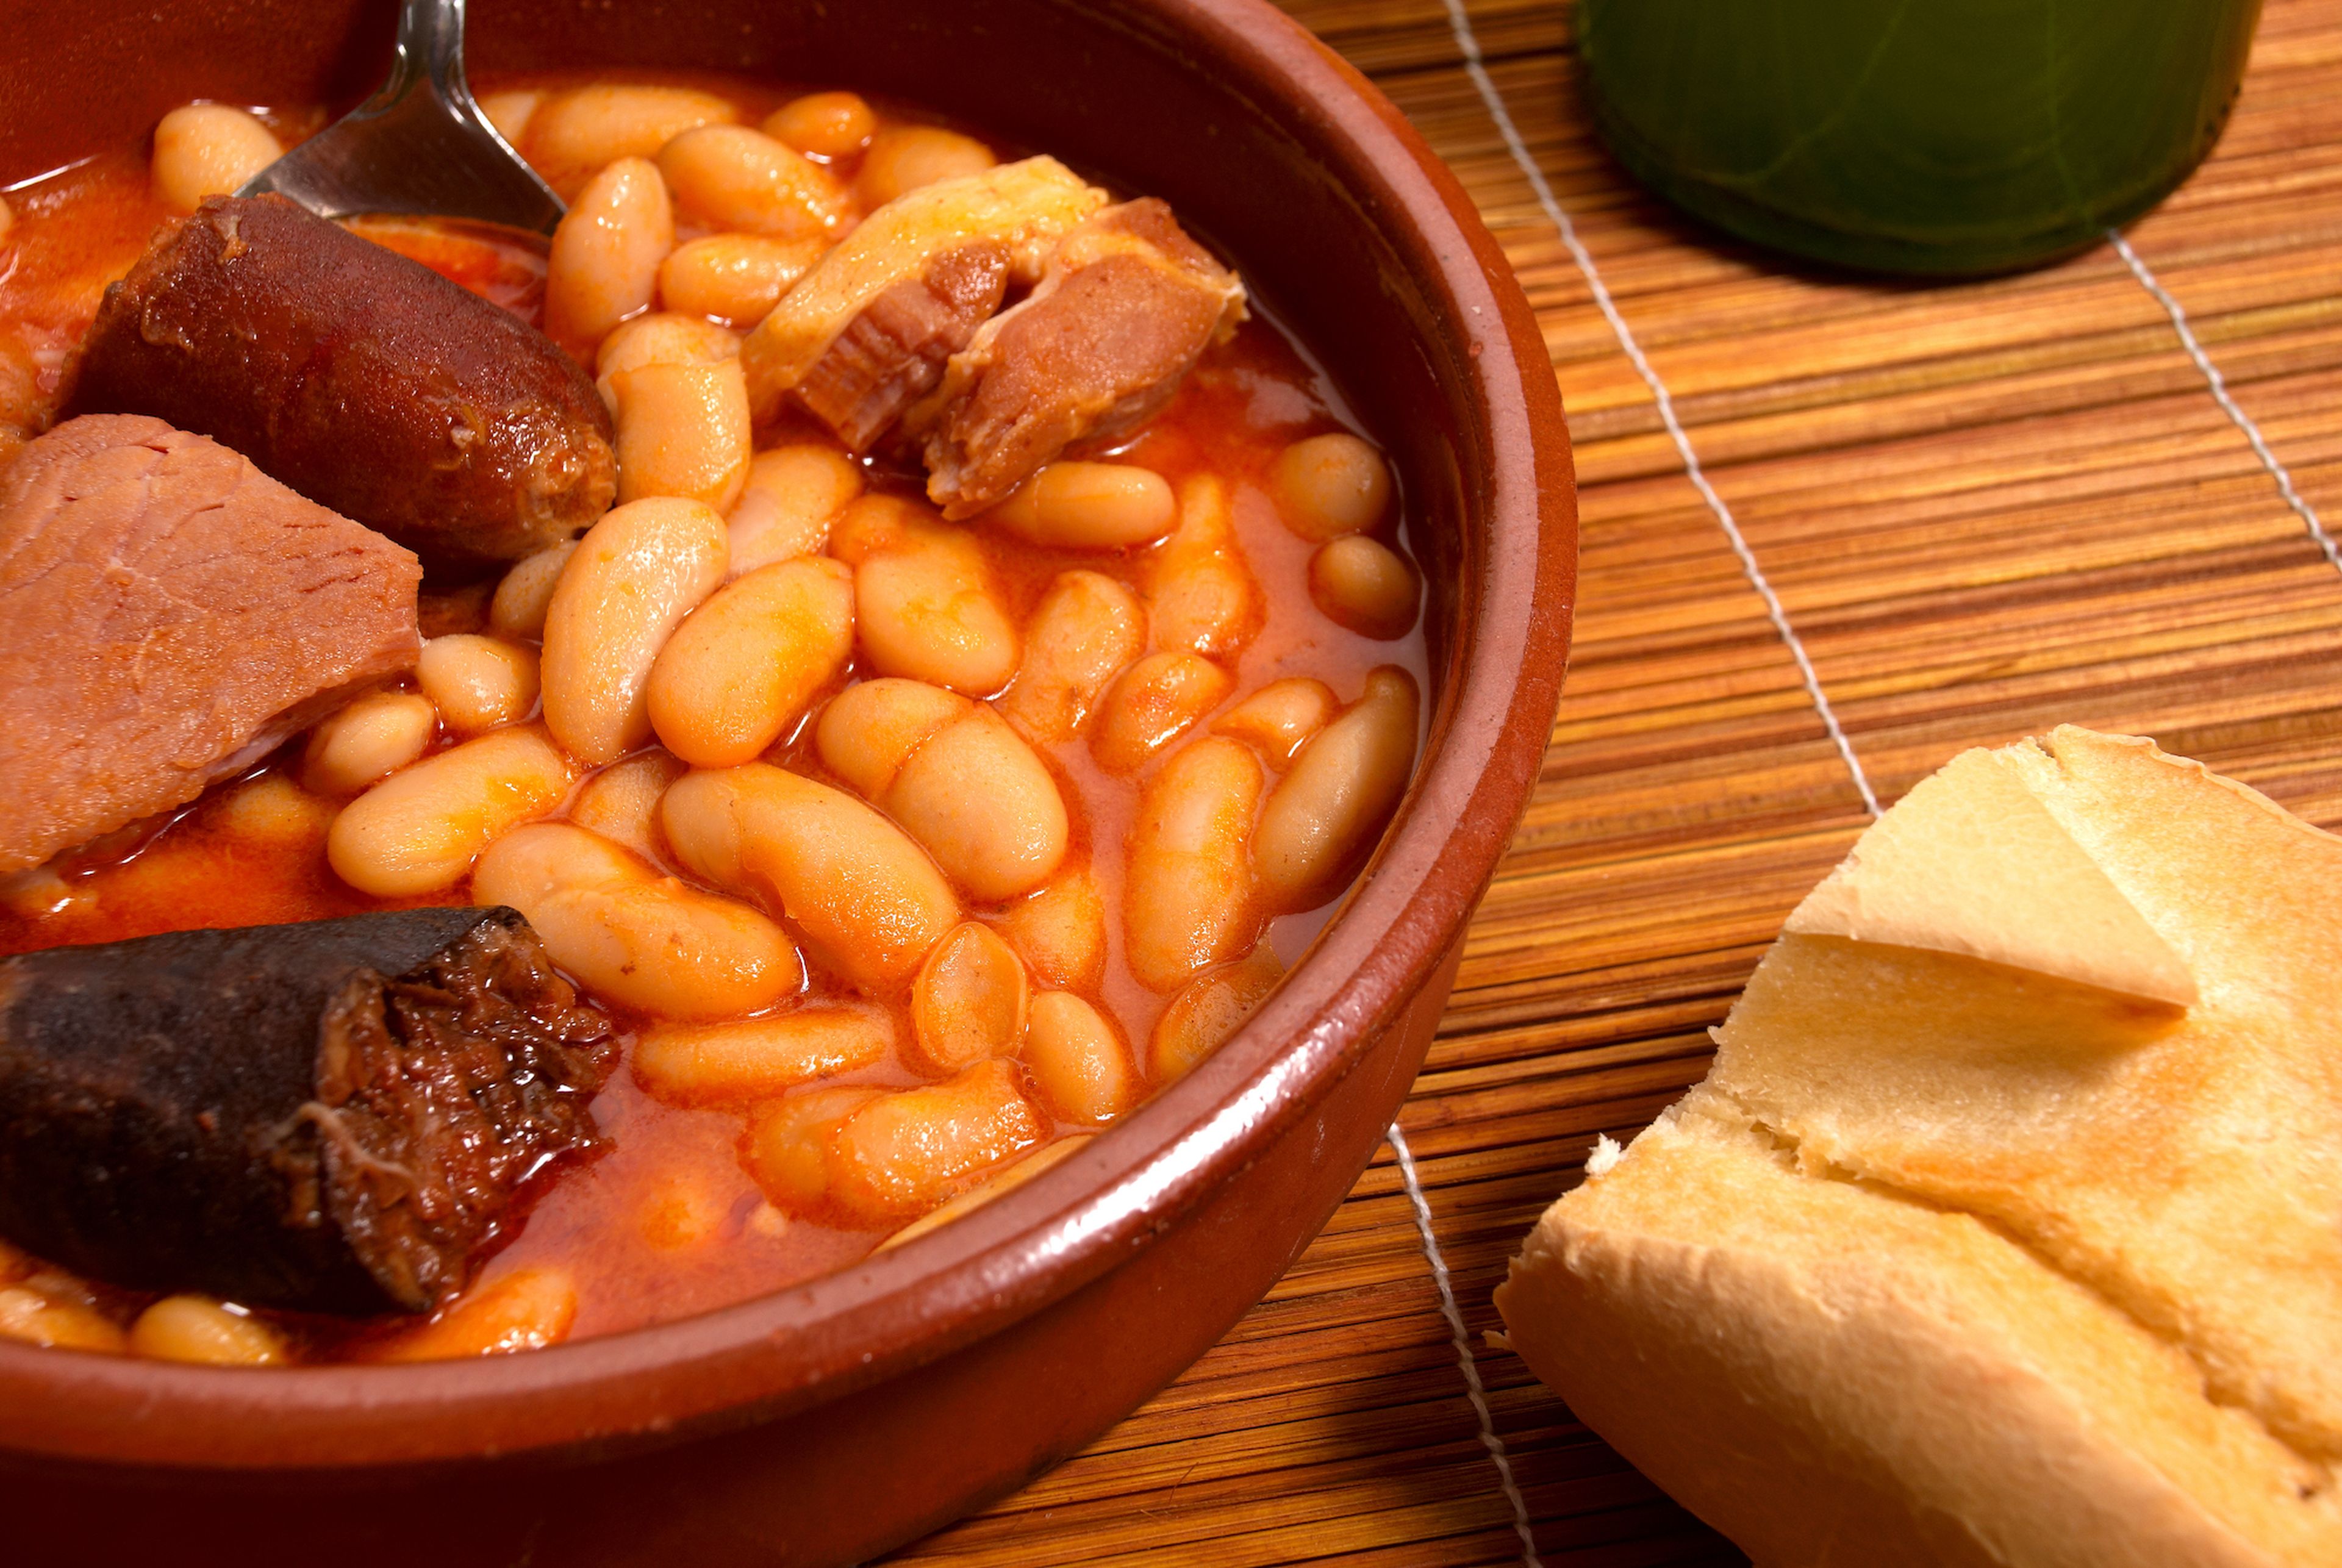 La receta de fabada perfecta, según expertos | Business Insider España